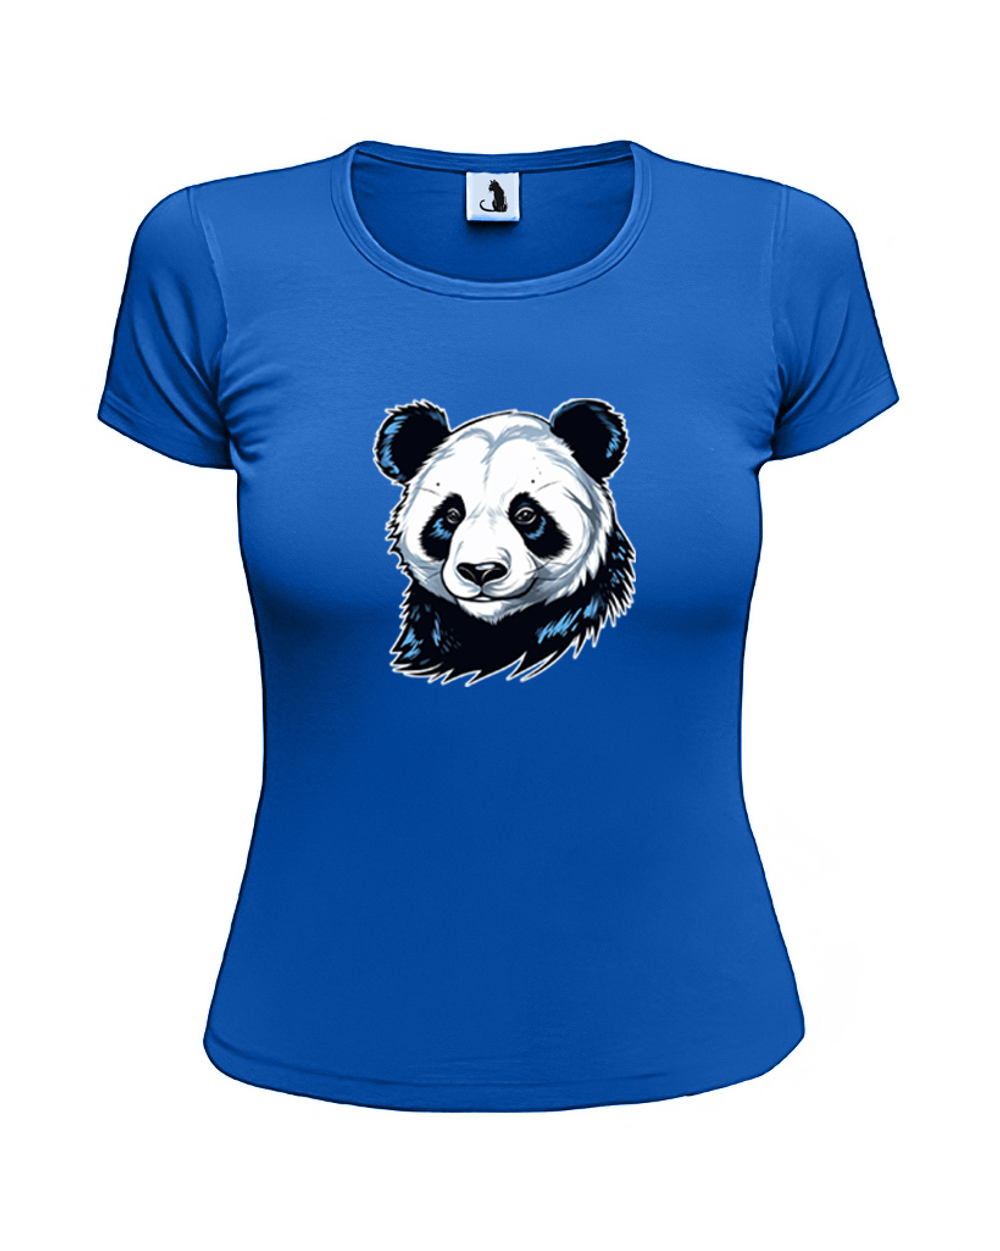 Футболка Панда женская приталенная синяя